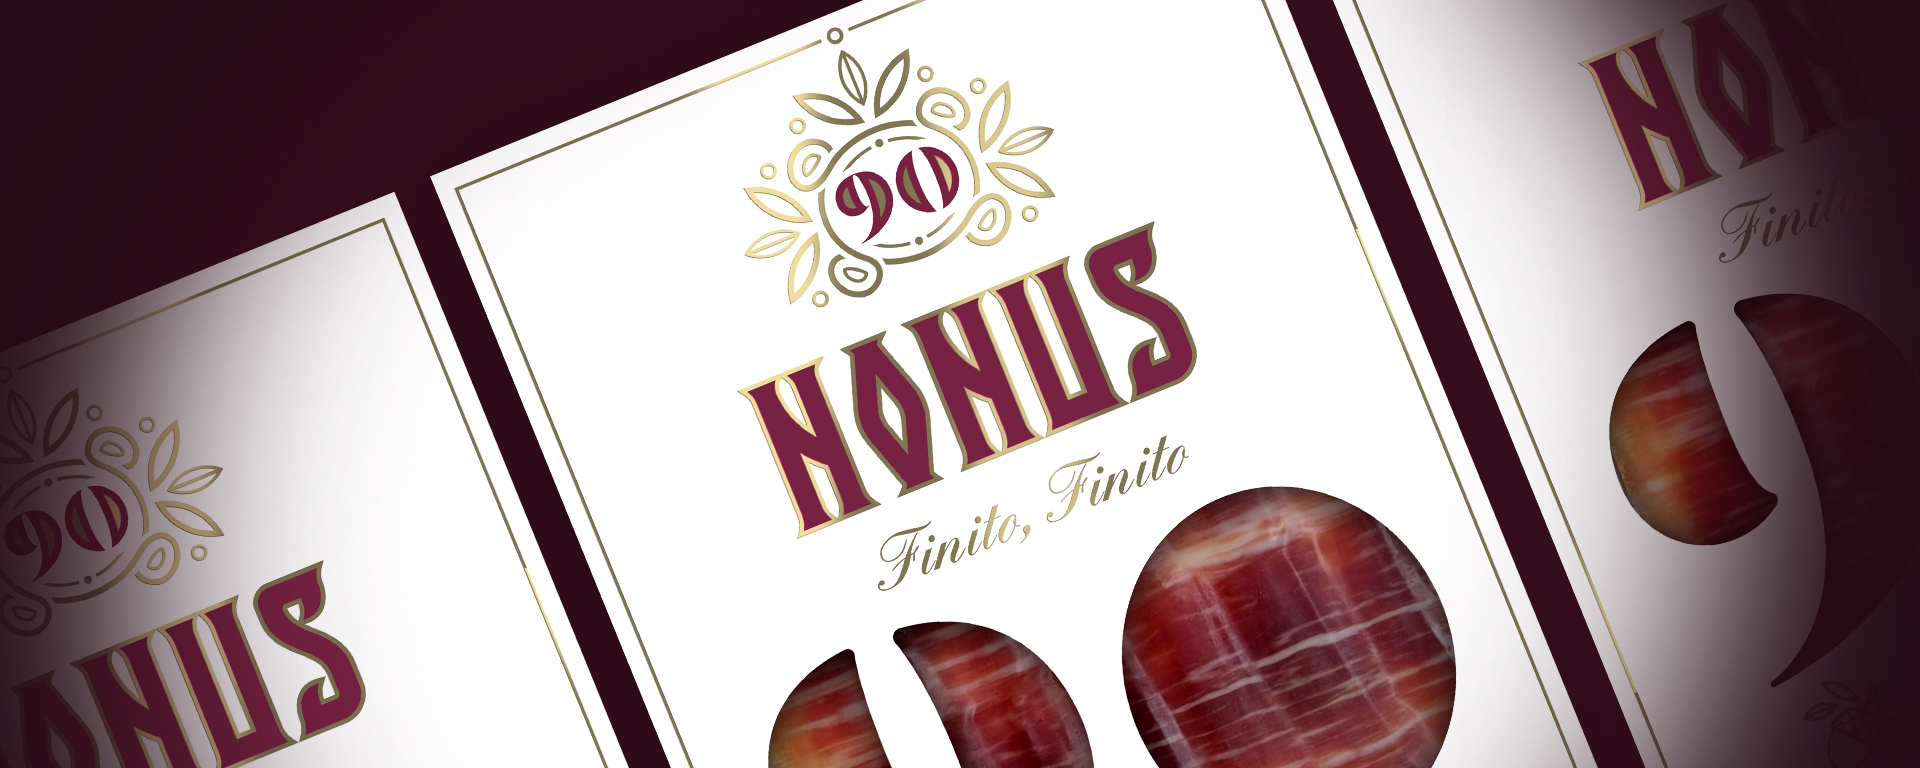 Nonus 90 brand ¡Finito finito! Imagen de marca Nonus aplicada en evases de jamón.